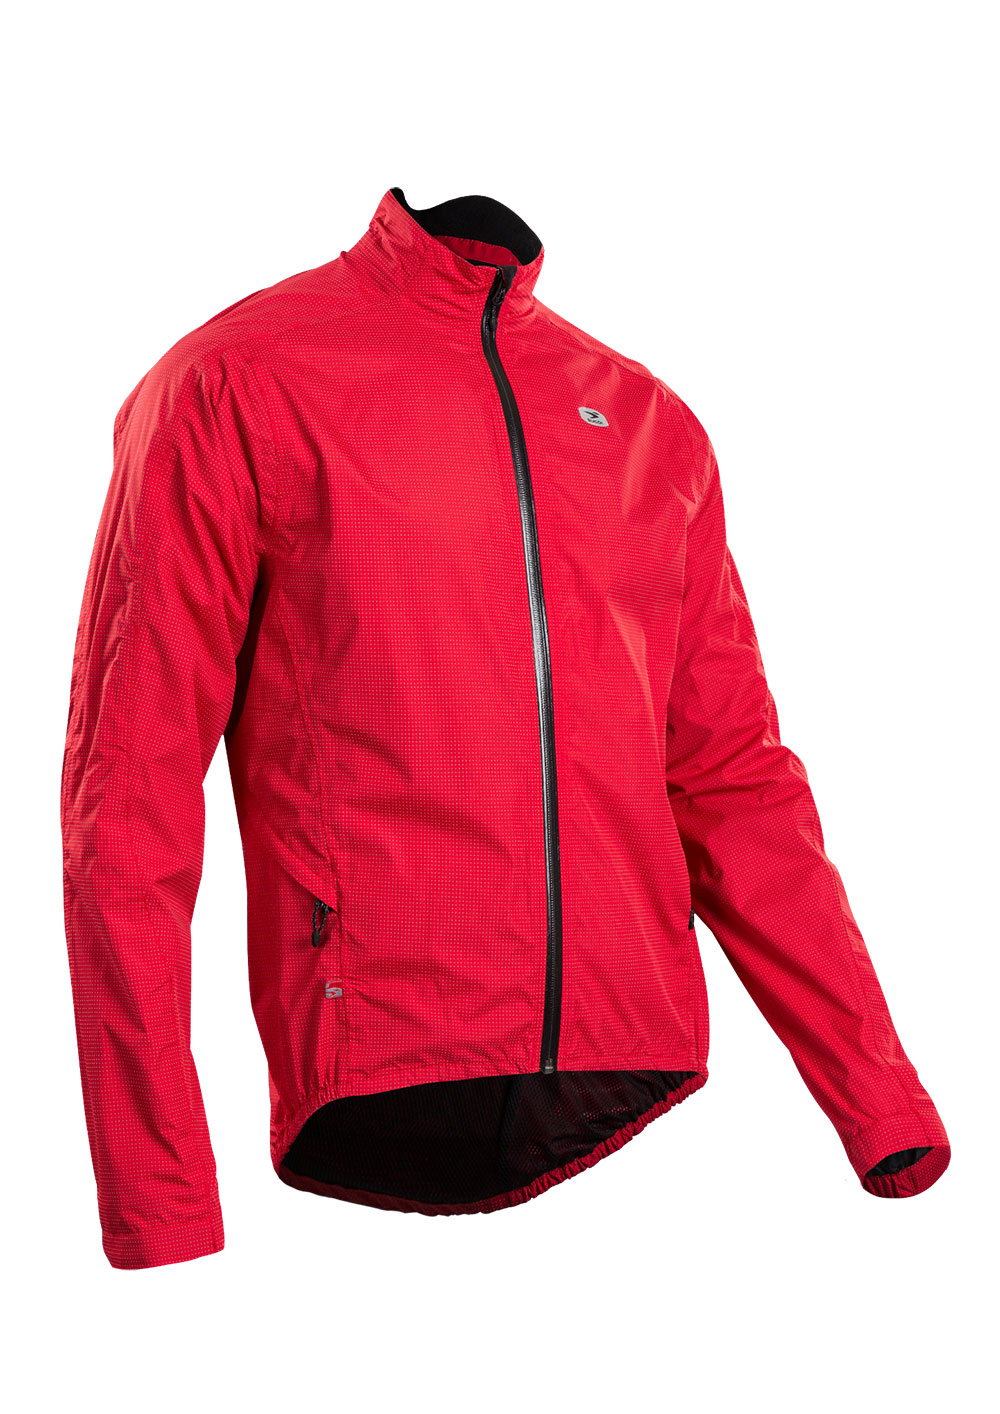 Куртка Sugoi ZAP BIKE, светоотражающая ткань, мужская, CHI (красная), XL